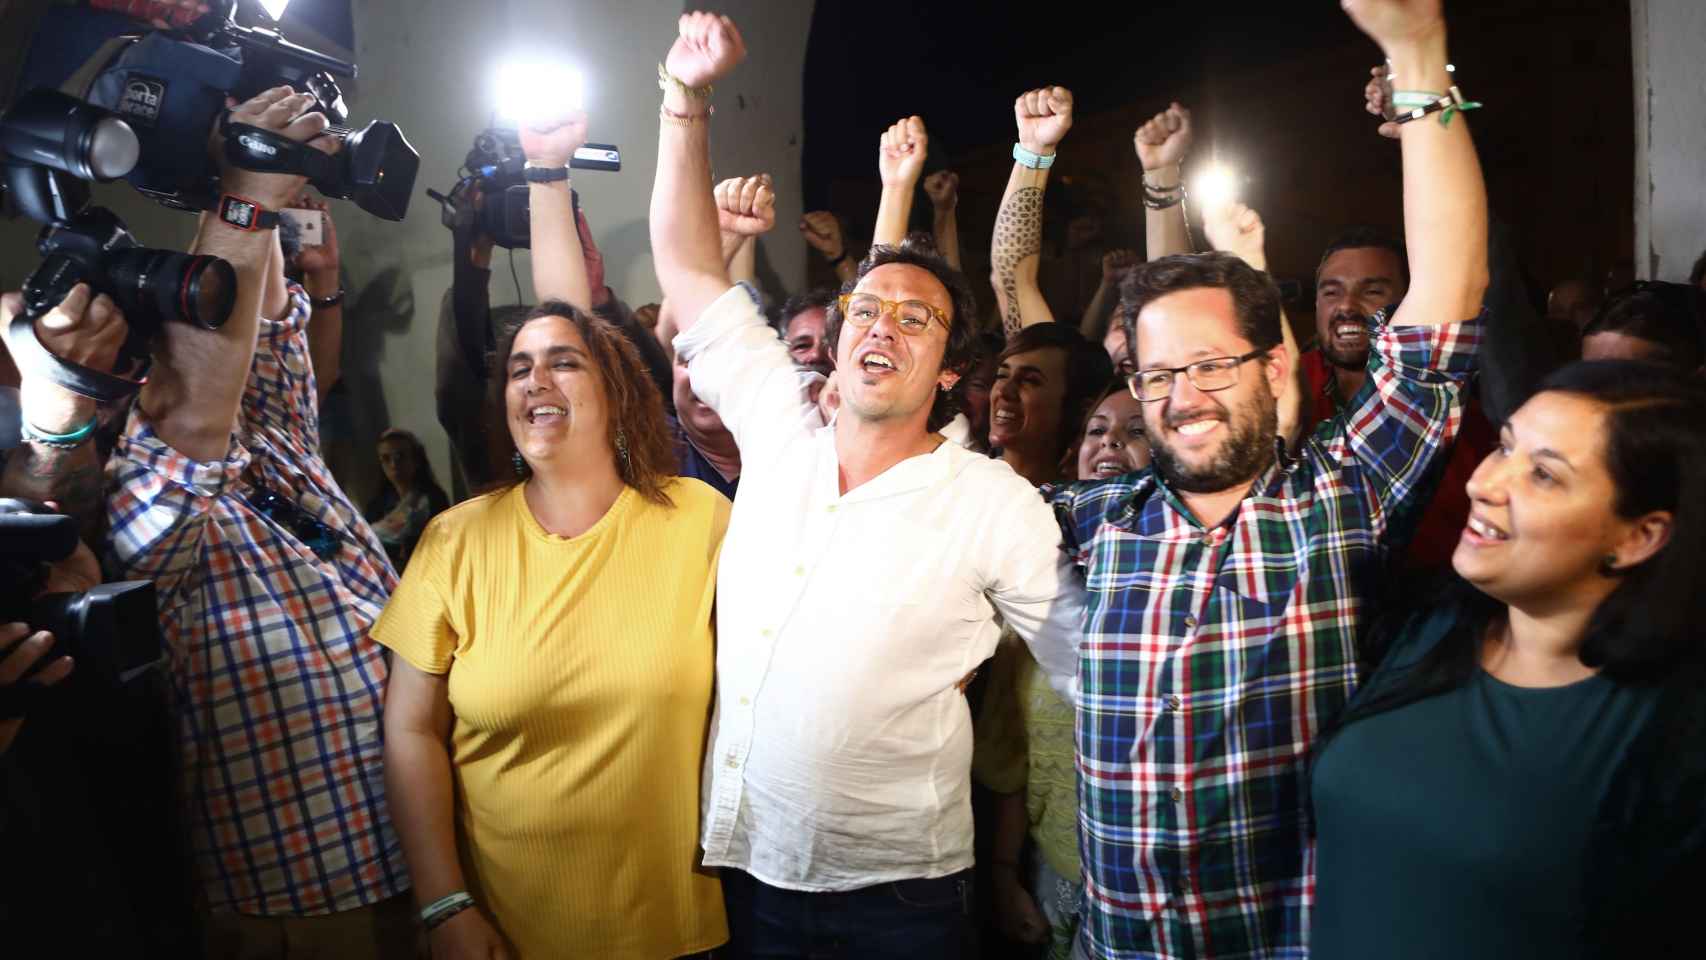 'Kichi' celebra junto a sus compañeros la victoria de Podemos en Cádiz